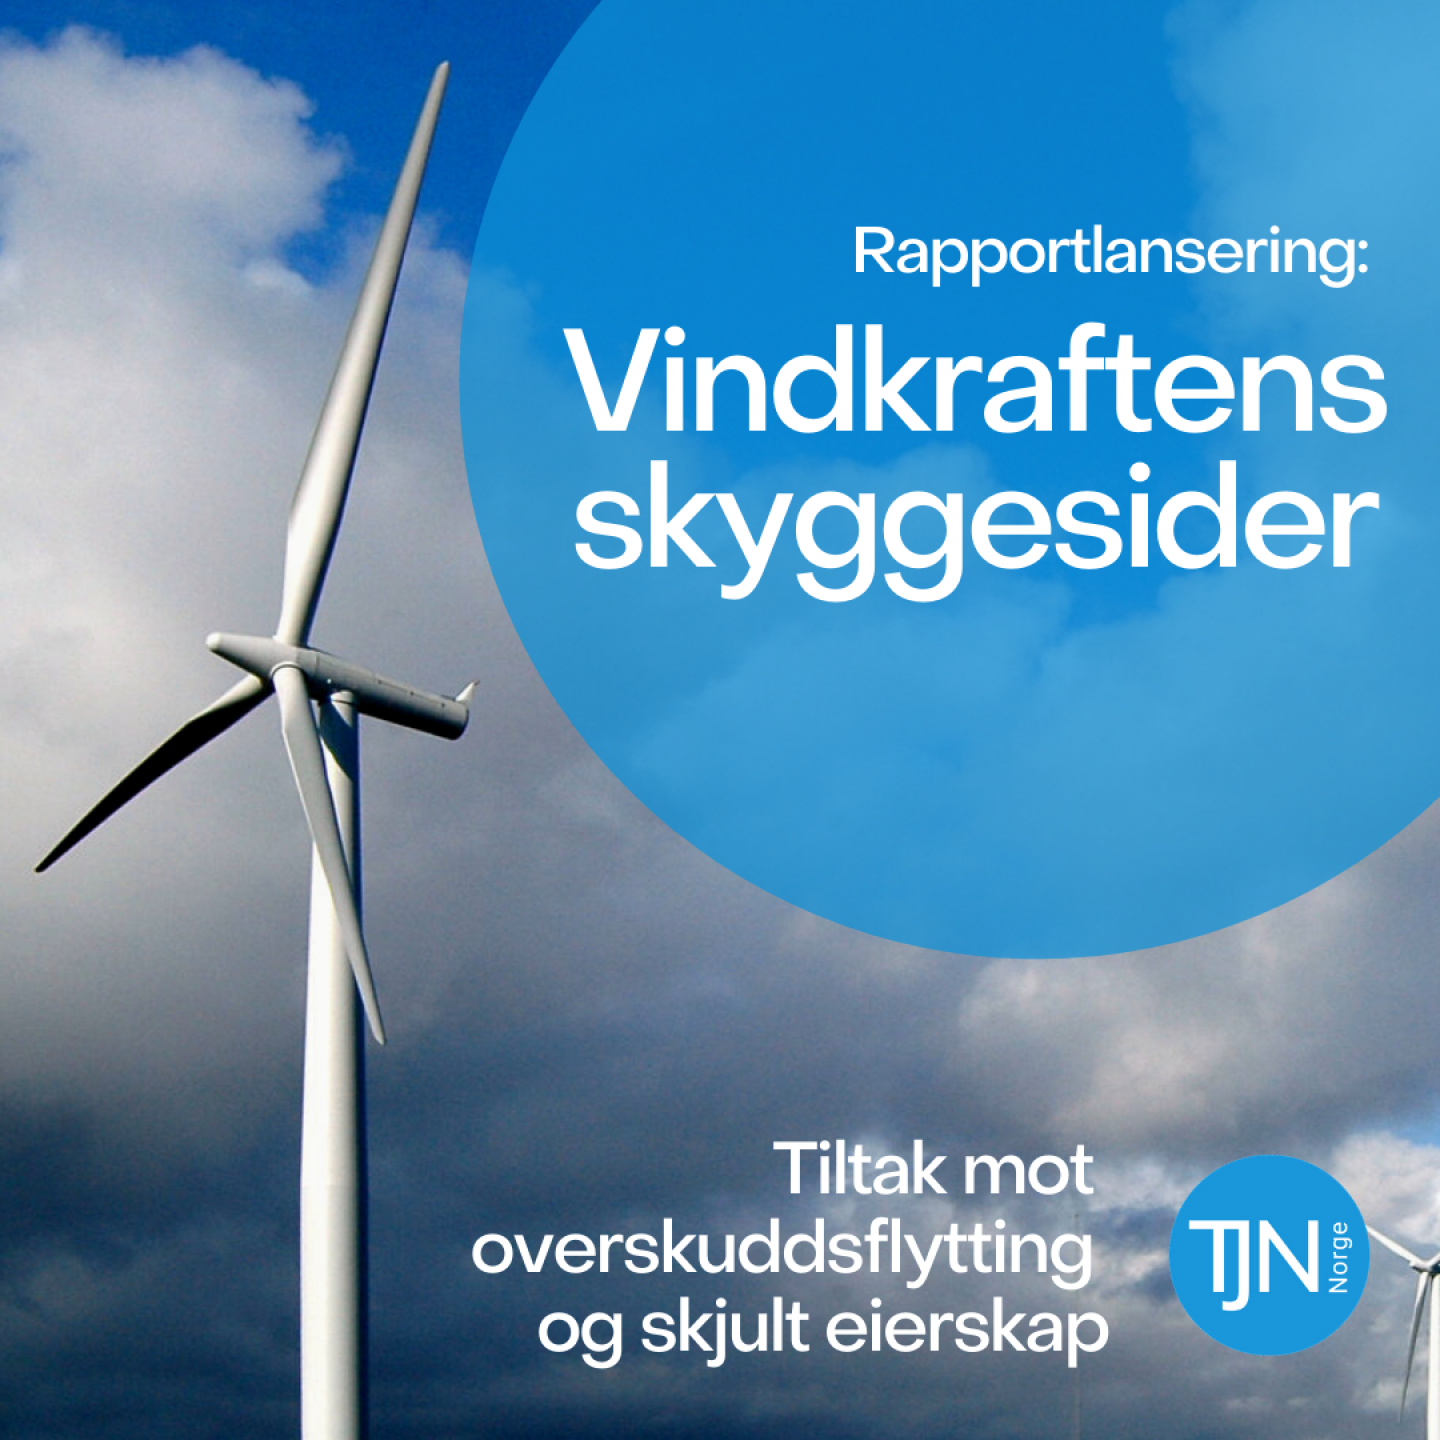 Ny rapport från Tax Justice Norway visar att vindkraftsbolag kan knytas till skatteparadis